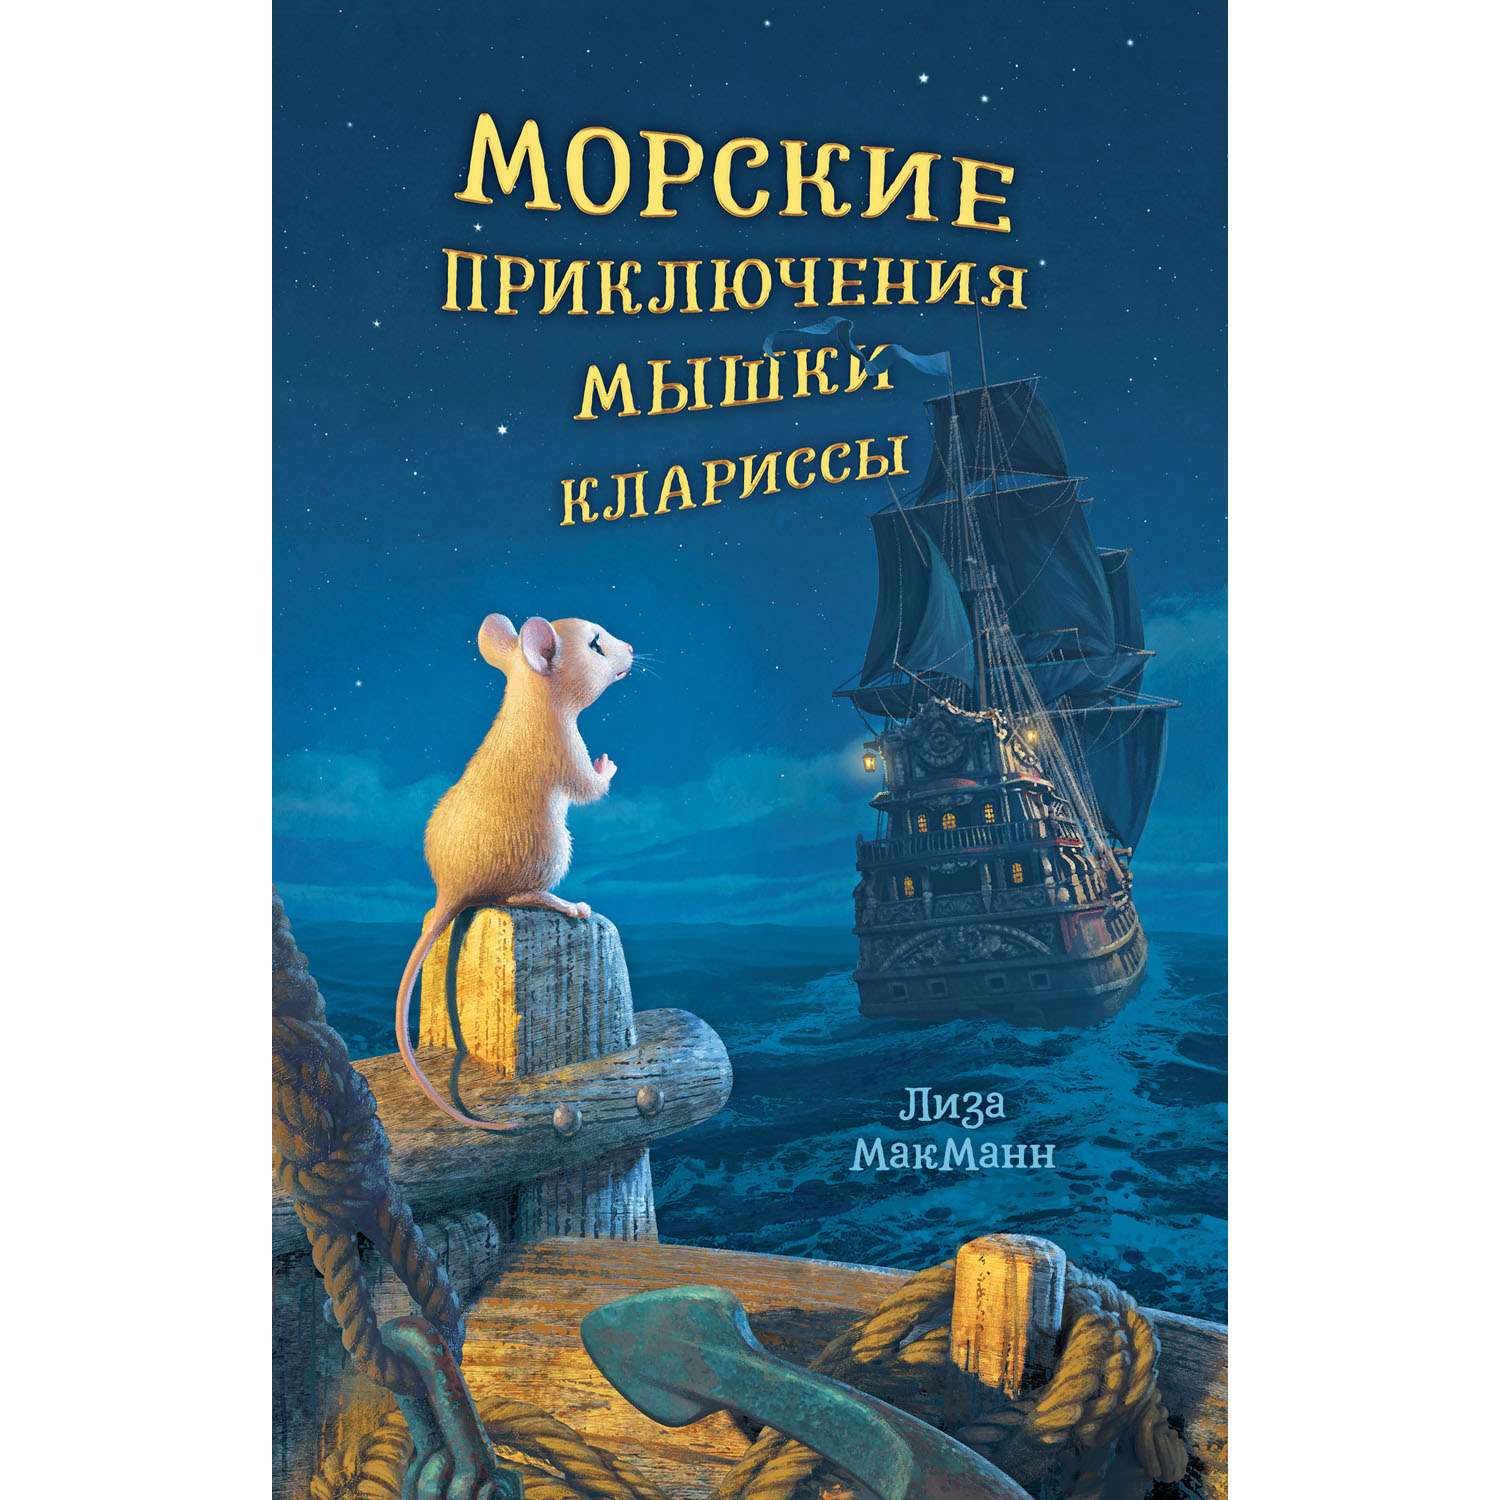 Книга Clever Издательство Морские приключения мышки Клариссы - фото 1